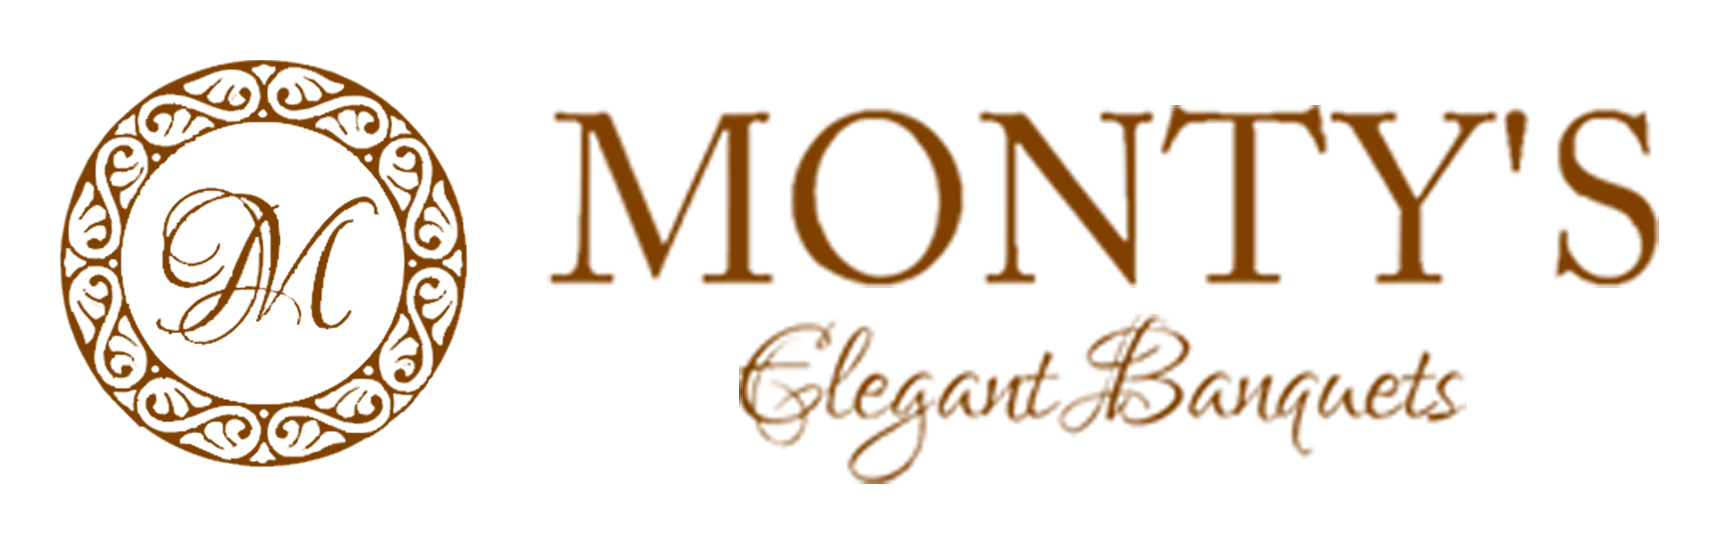 Montys-logo